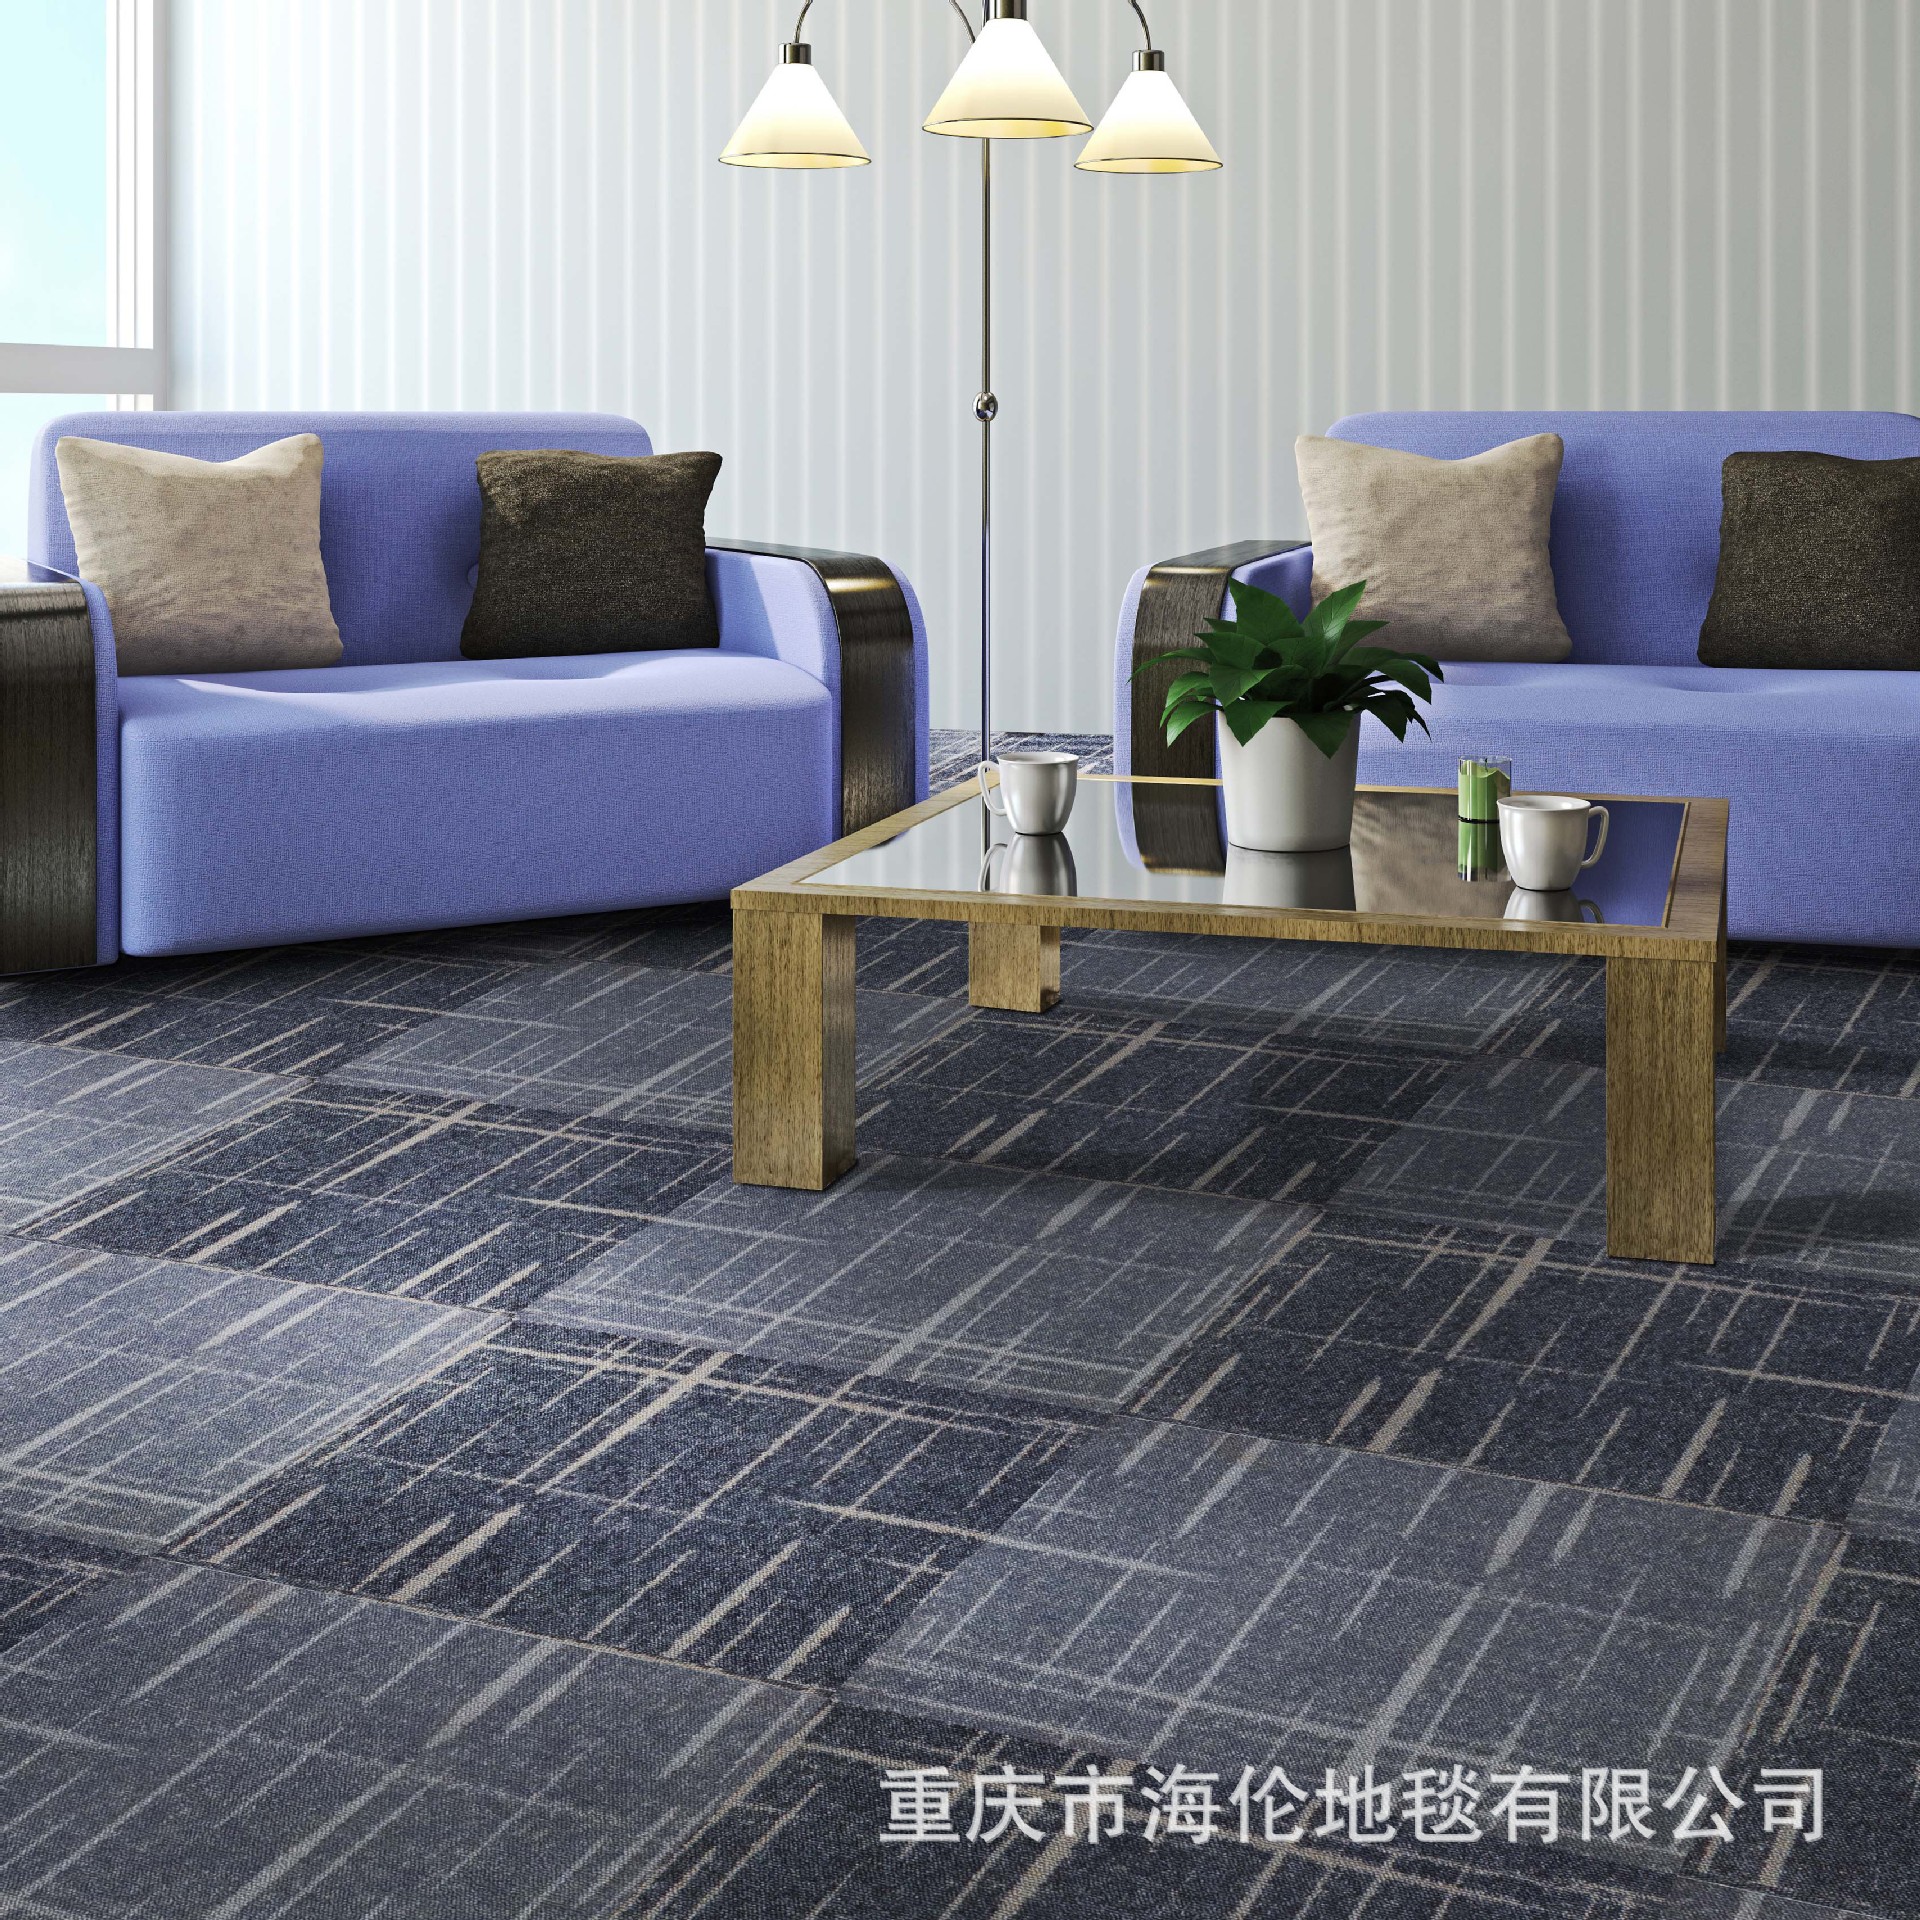 厂家定制尼龙印花办公室客厅卧室方块拼接地毯pvc防水环保软底